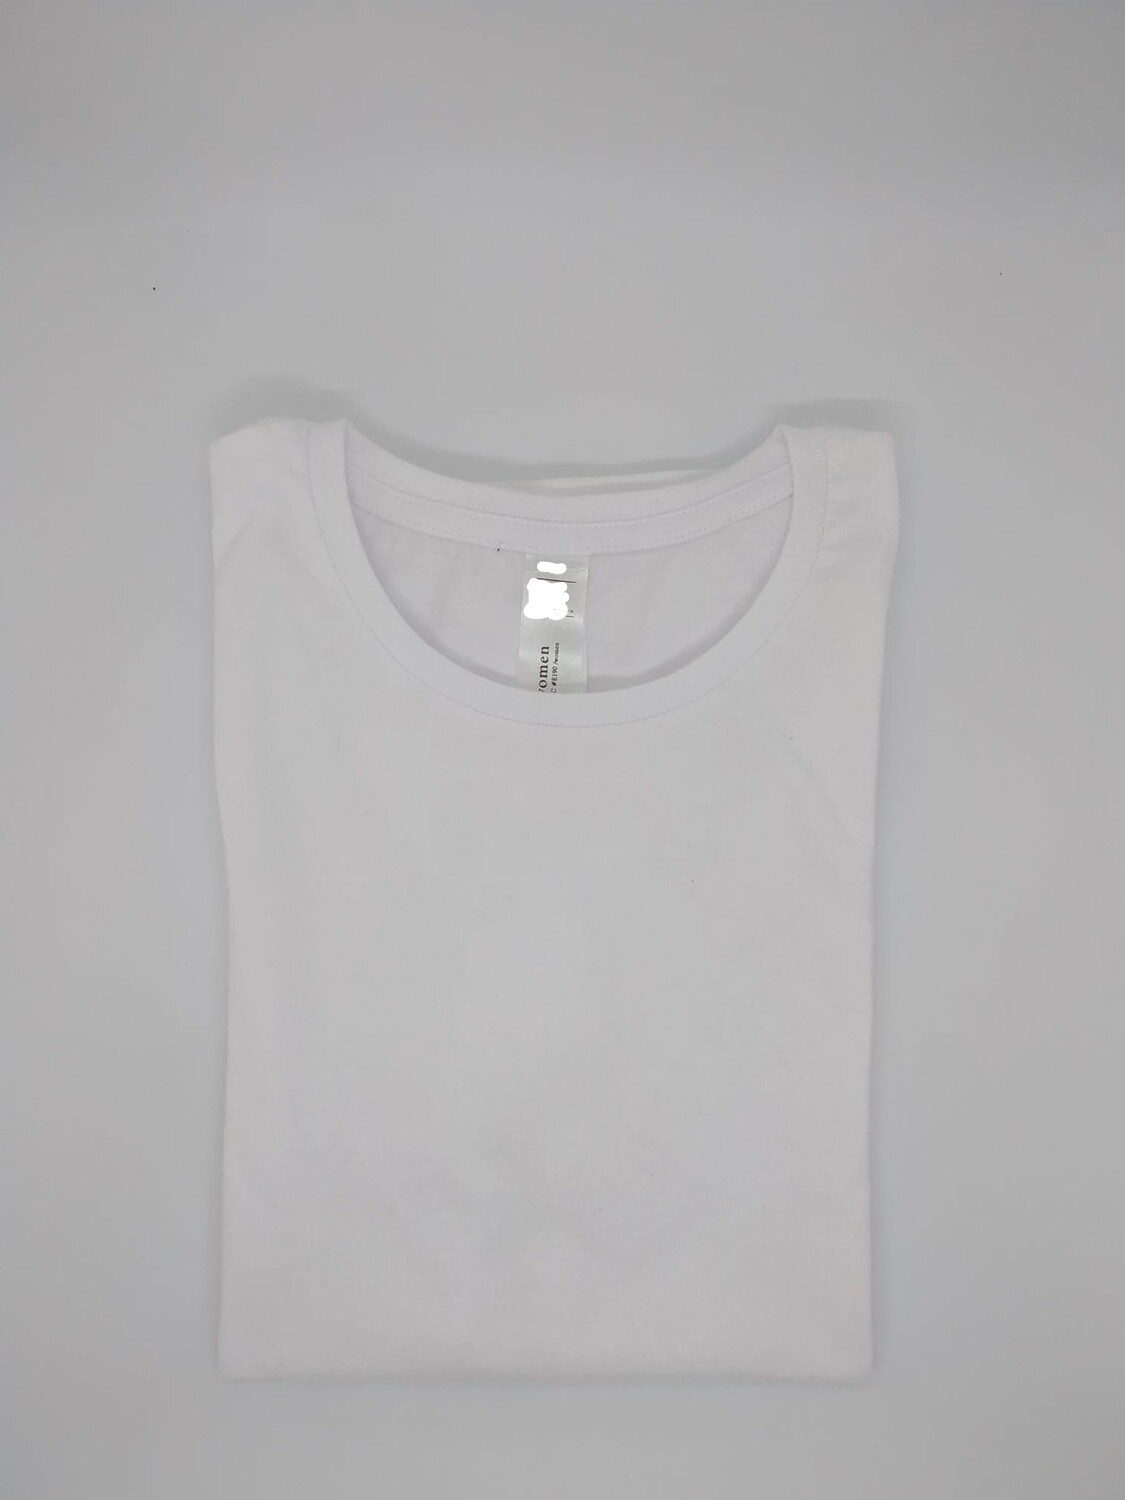 Wit t-shirt voor onder schooluniform en/of praktijkkledij